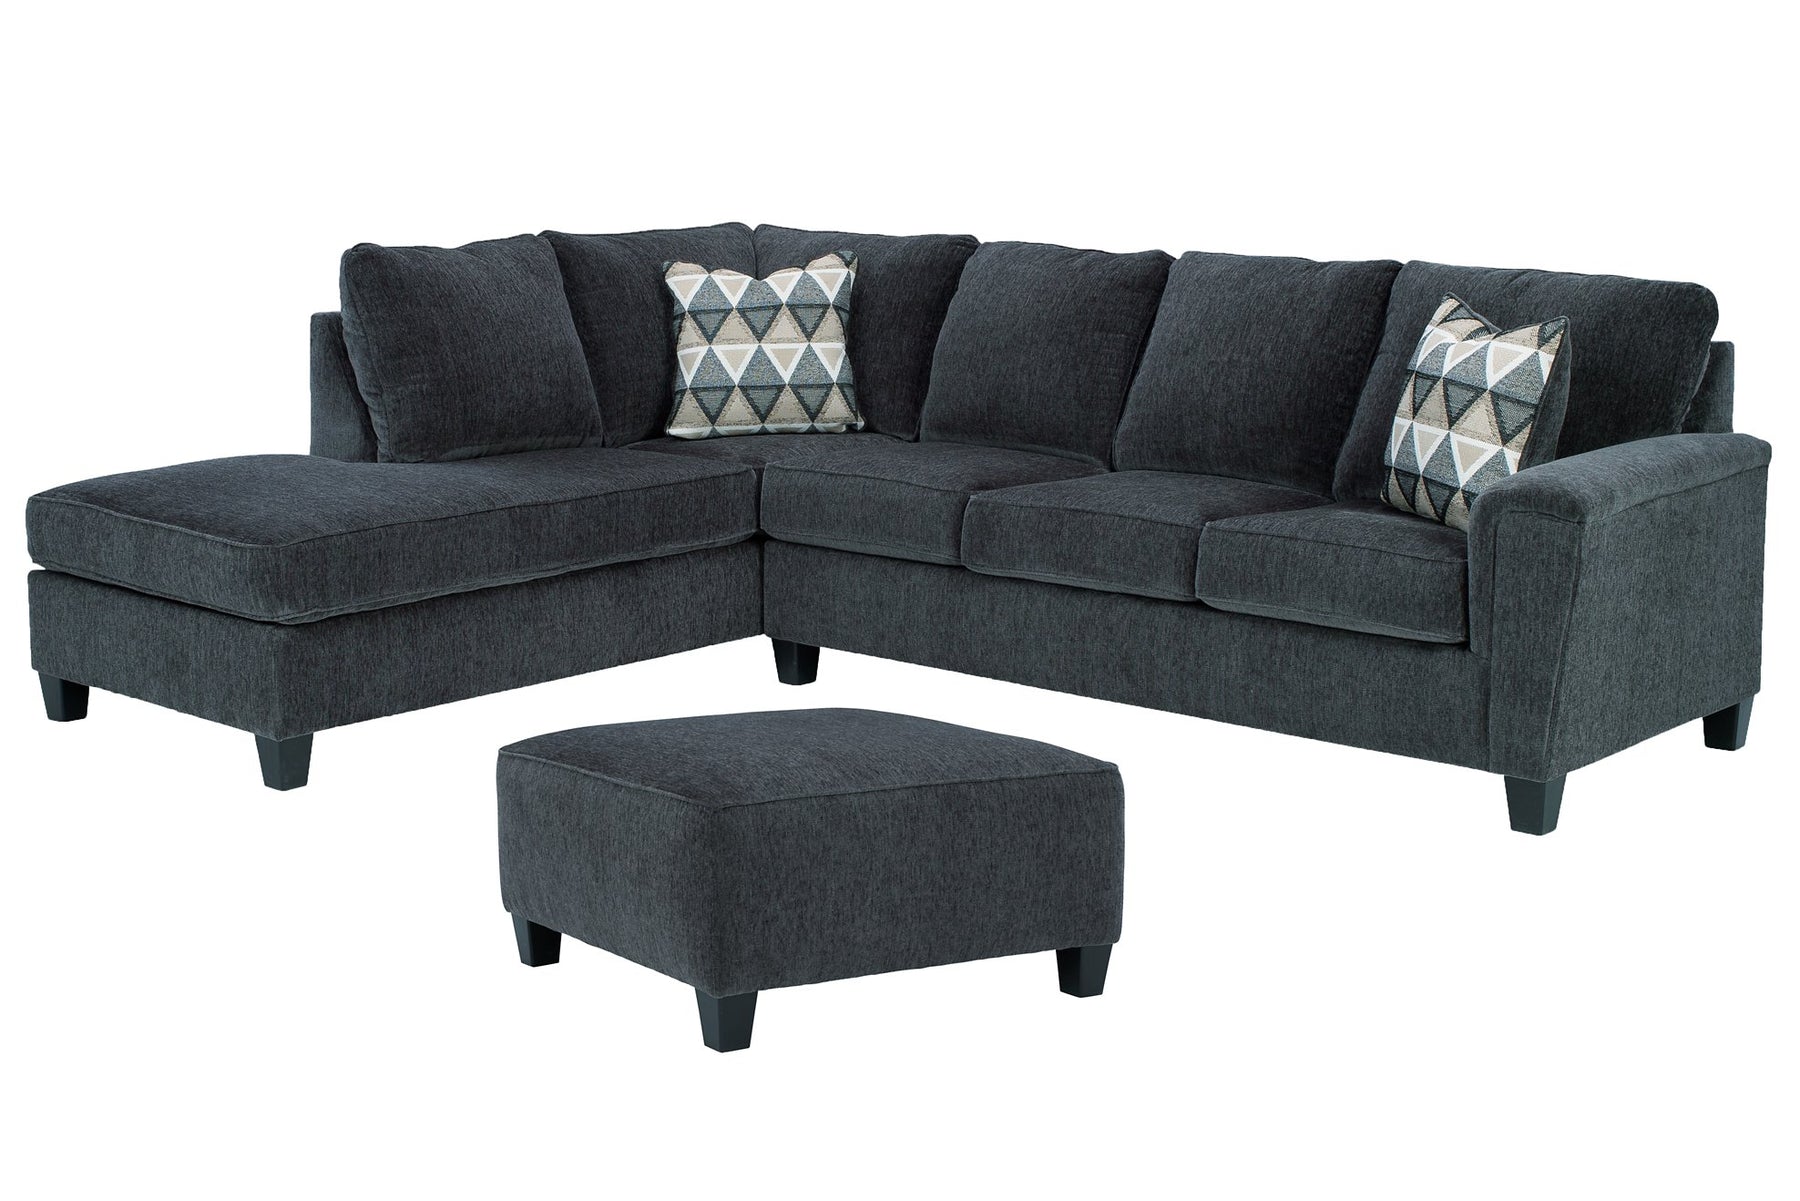 Abinger Living Room Set - Half Price Furniture